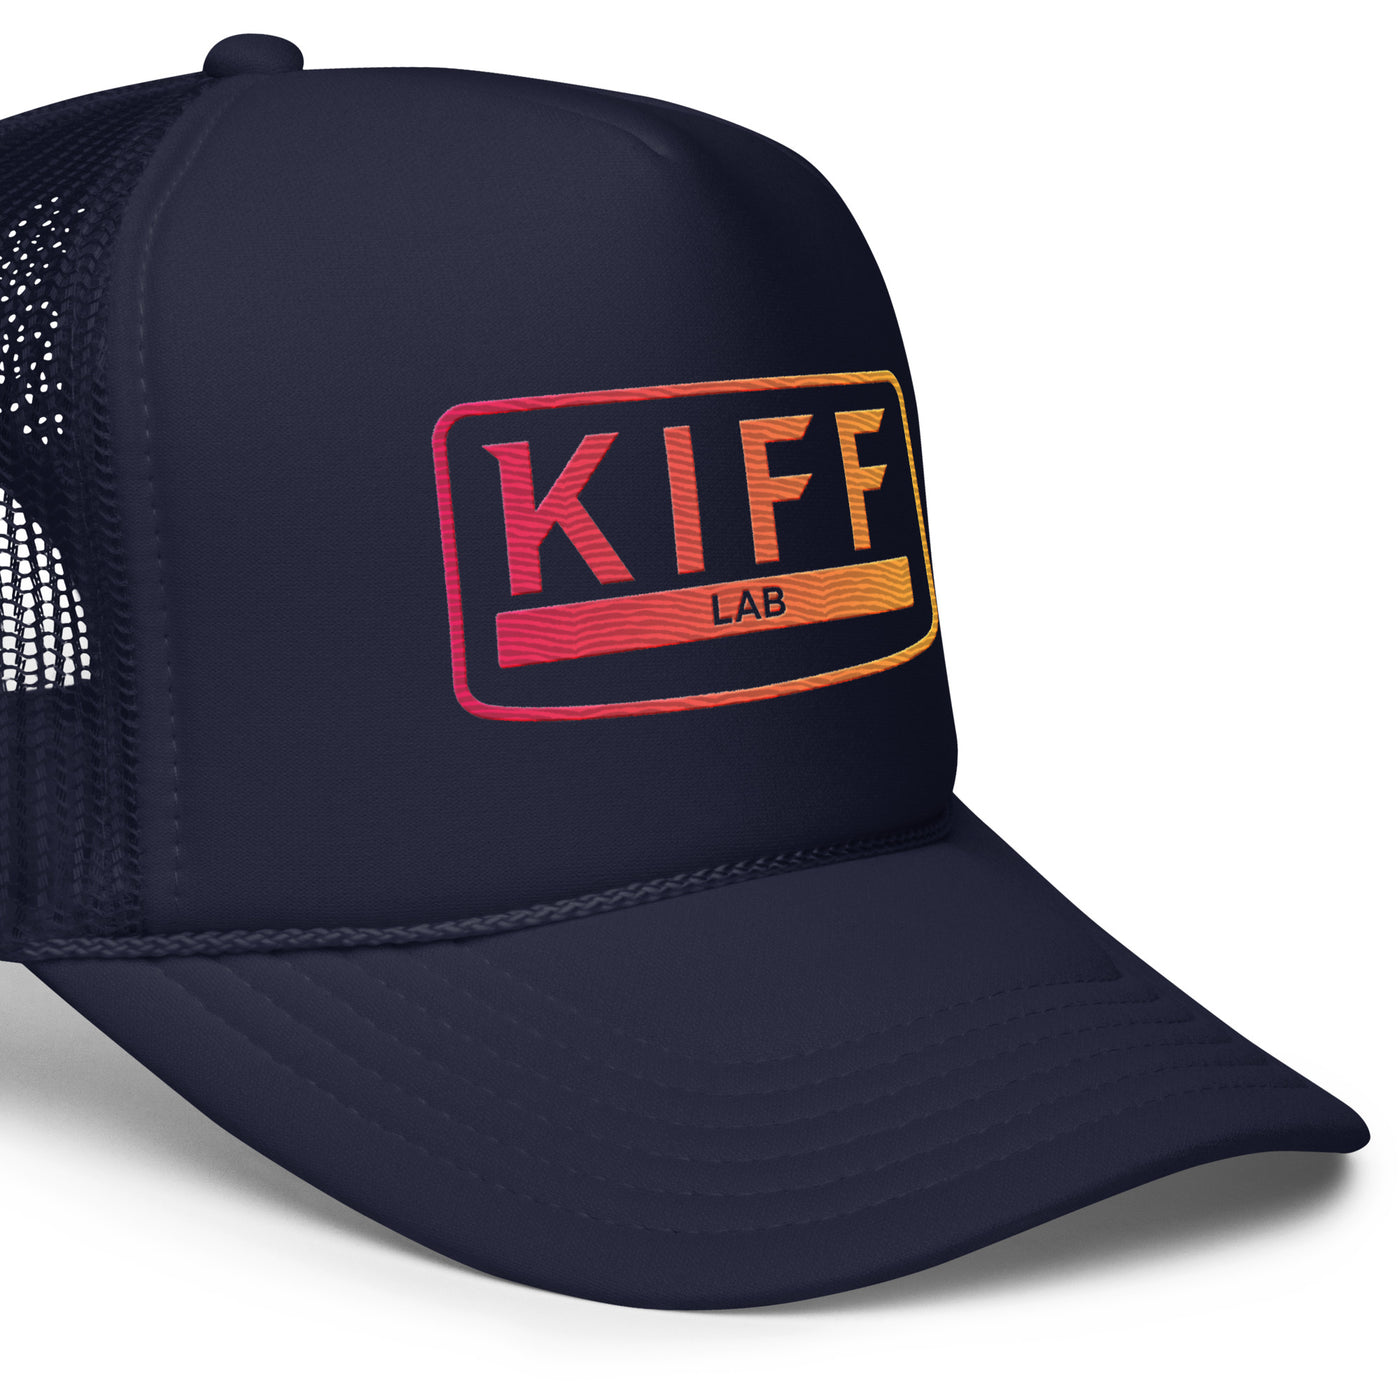 Kiff trucker hat 